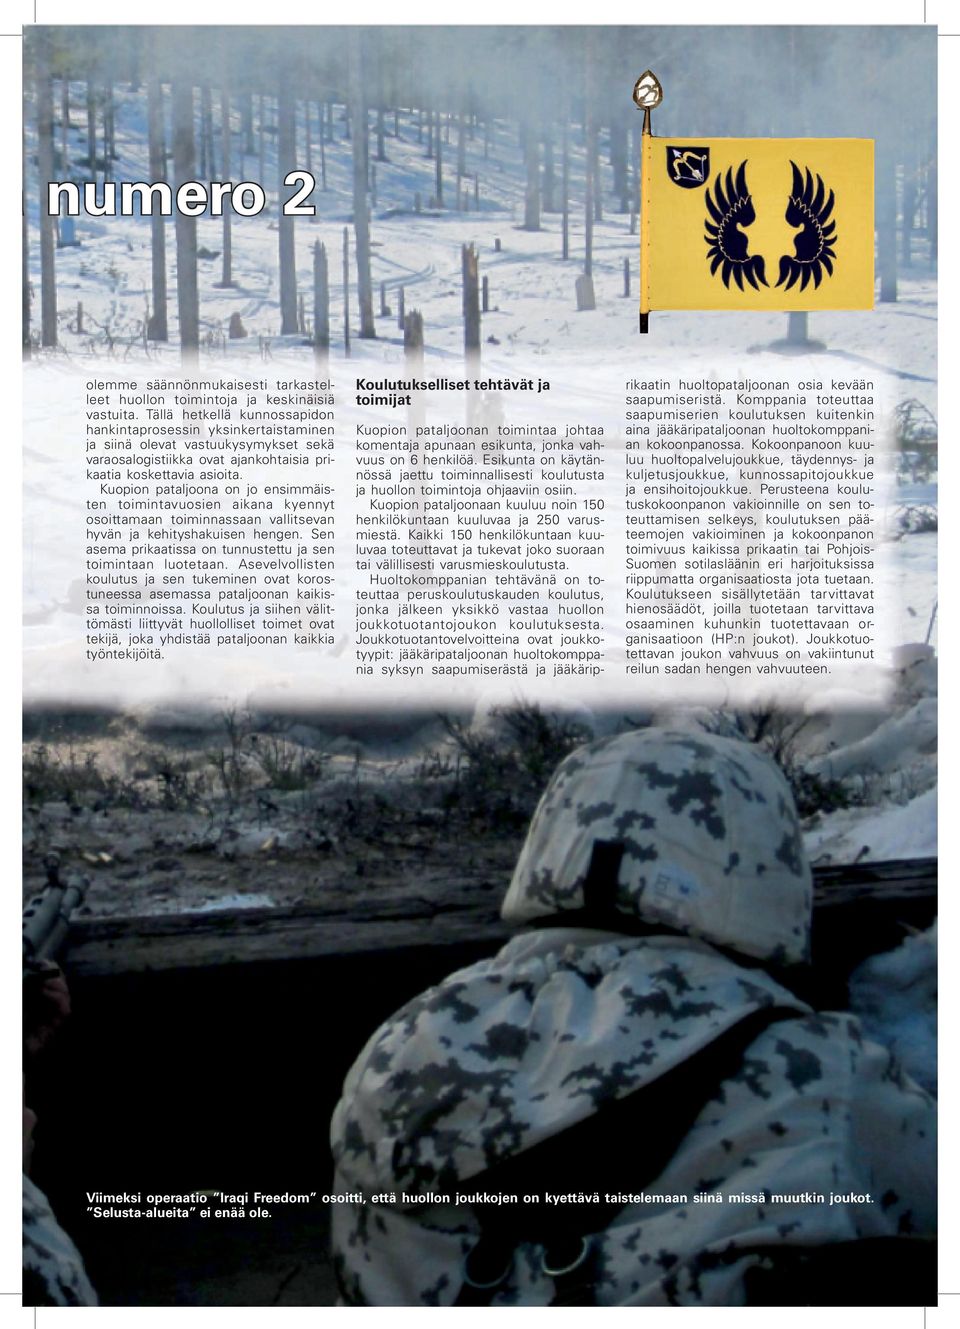 Kuopion pataljoona on jo ensimmäisten toimintavuosien aikana kyennyt osoittamaan toiminnassaan vallitsevan hyvän ja kehityshakuisen hengen.